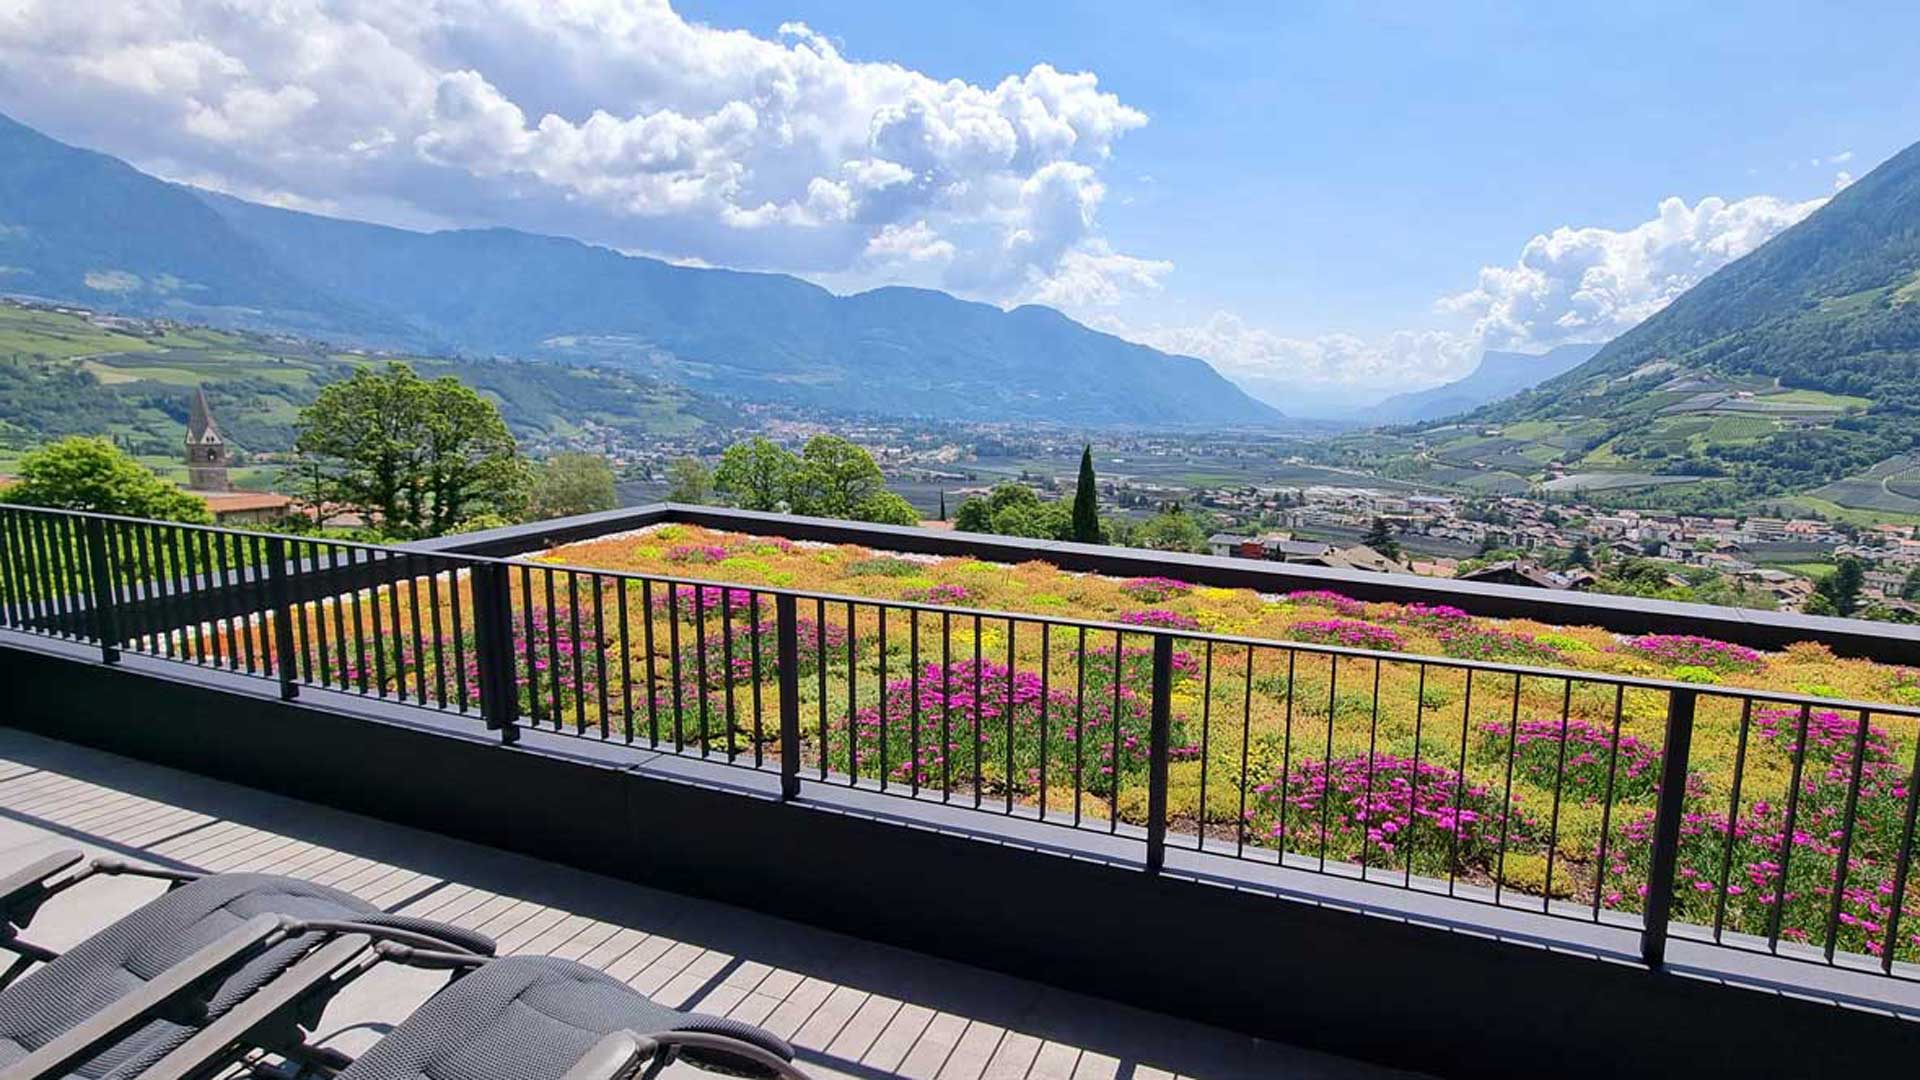 Ferienwohnung mit Balkon und Blick ins Tal bei Algund